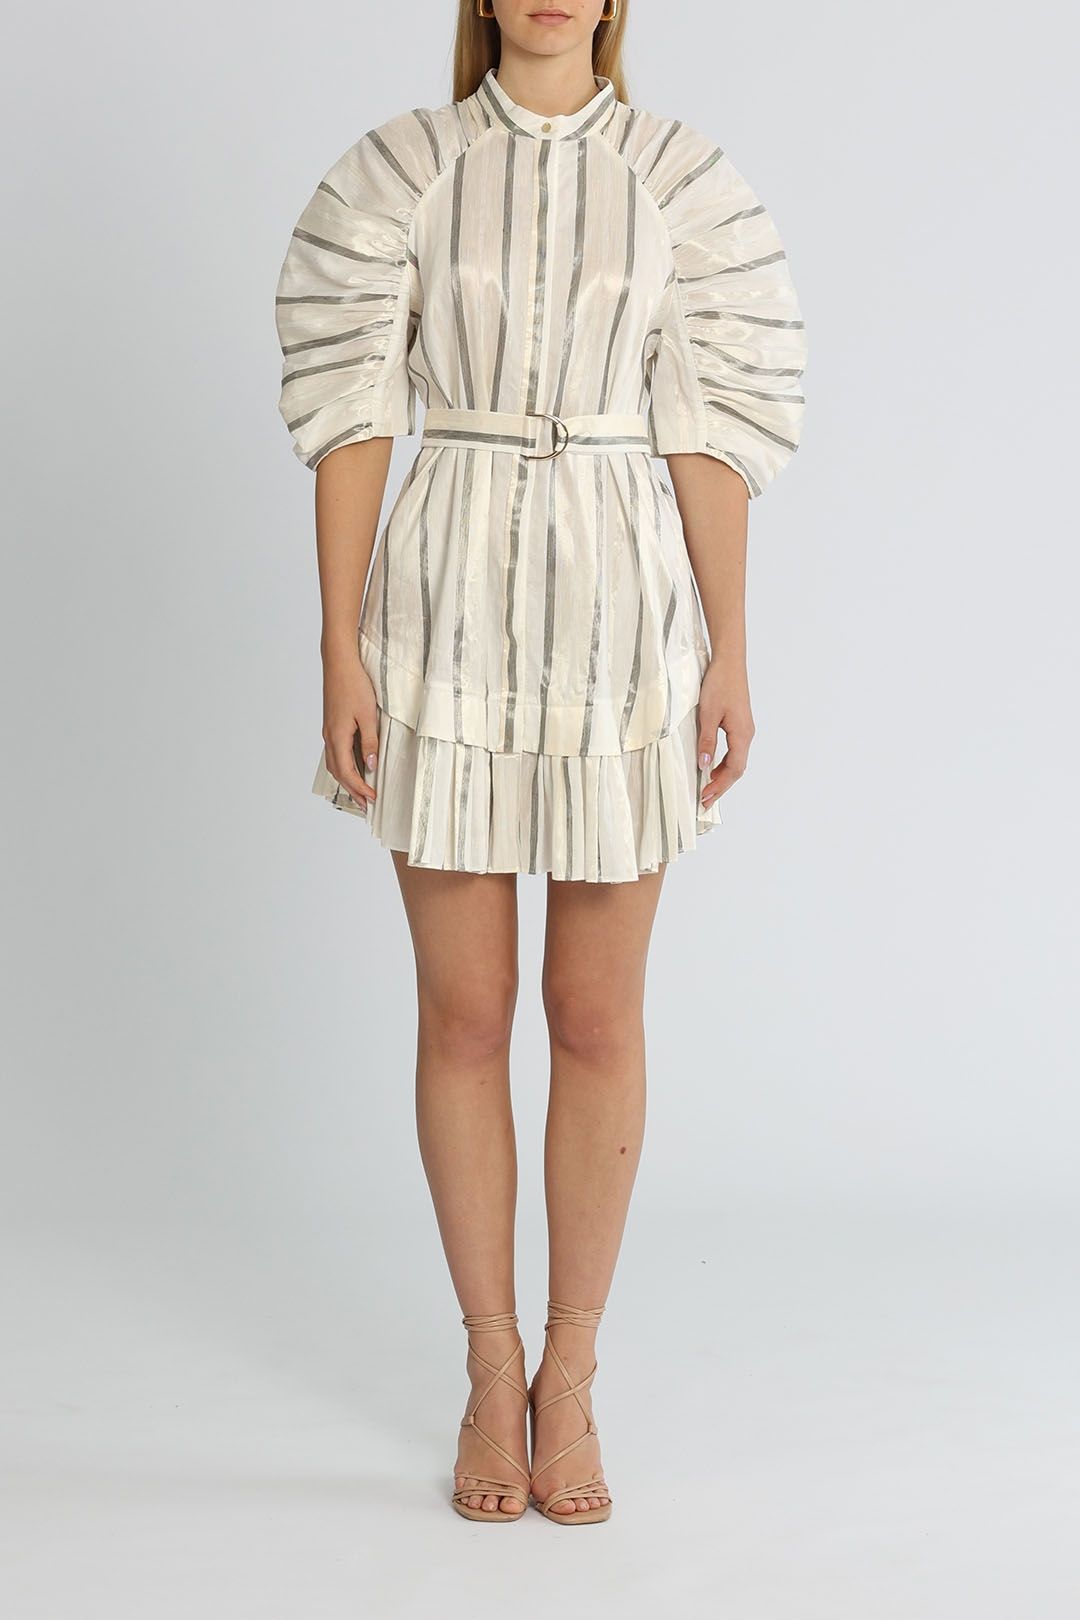 Acler Leighton Dress Mini